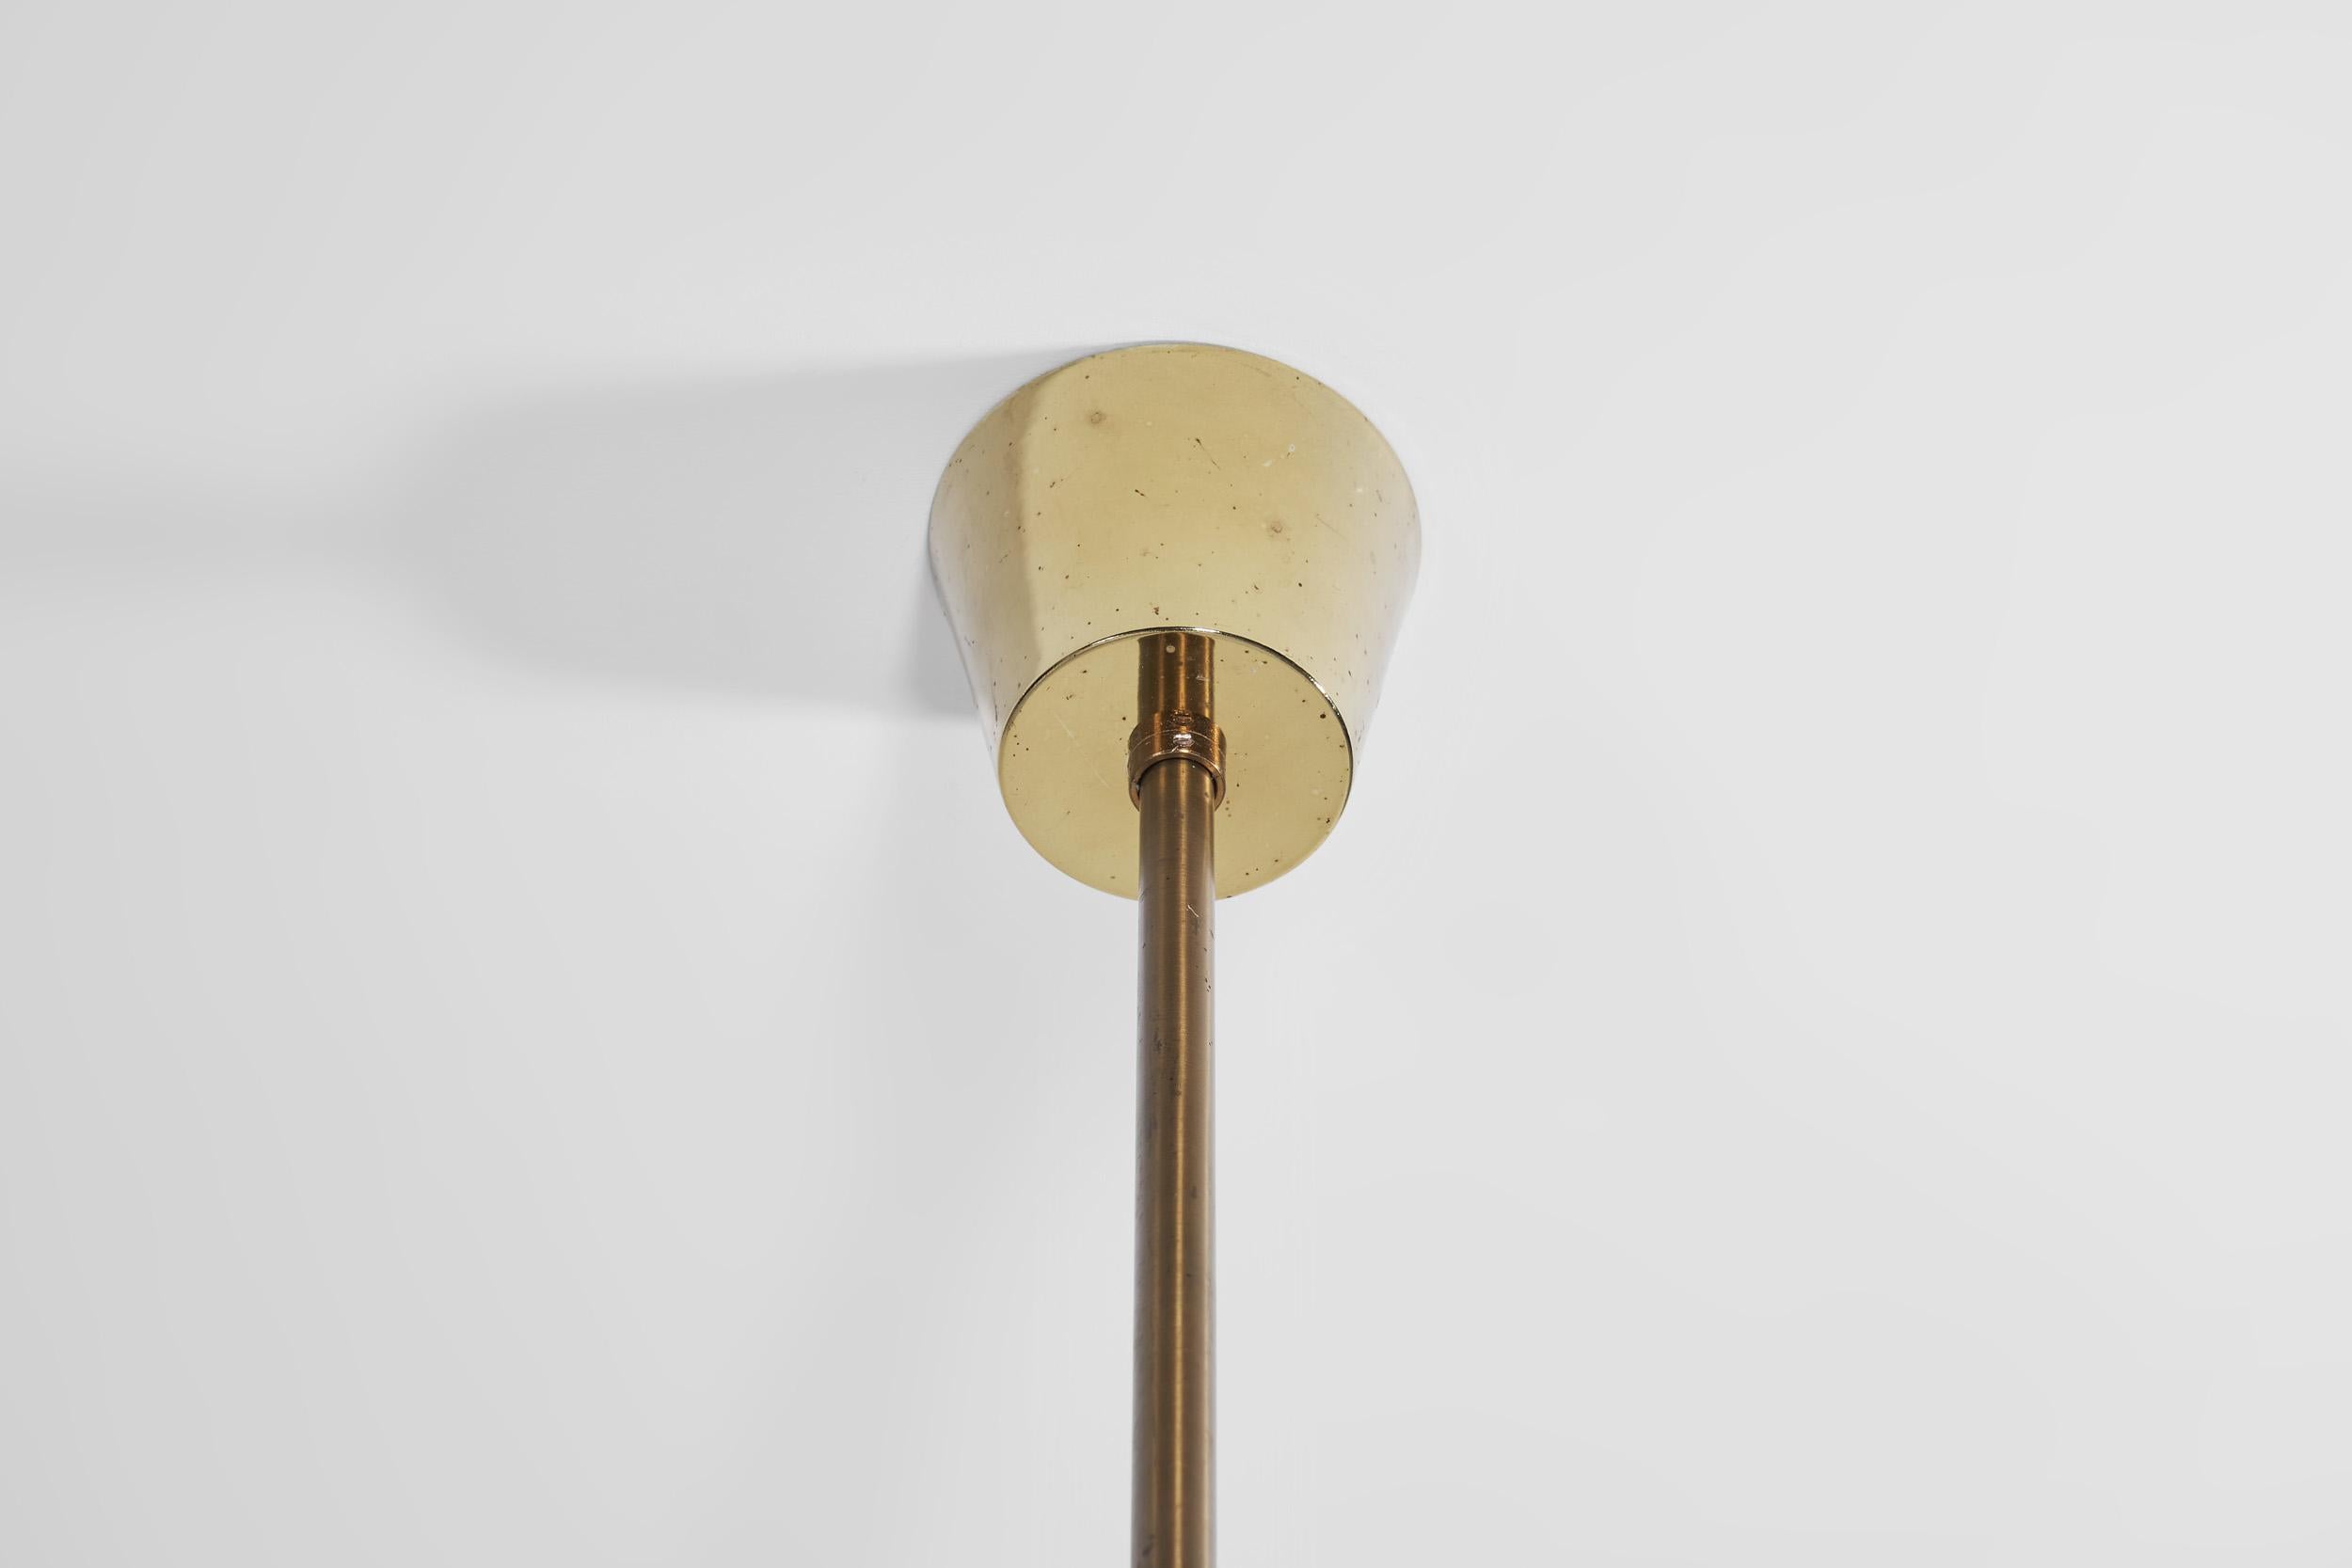 Holger Johansson Ceiling Lamps for Westal, Bankeryd, Sweden, 1960s For Sale 1